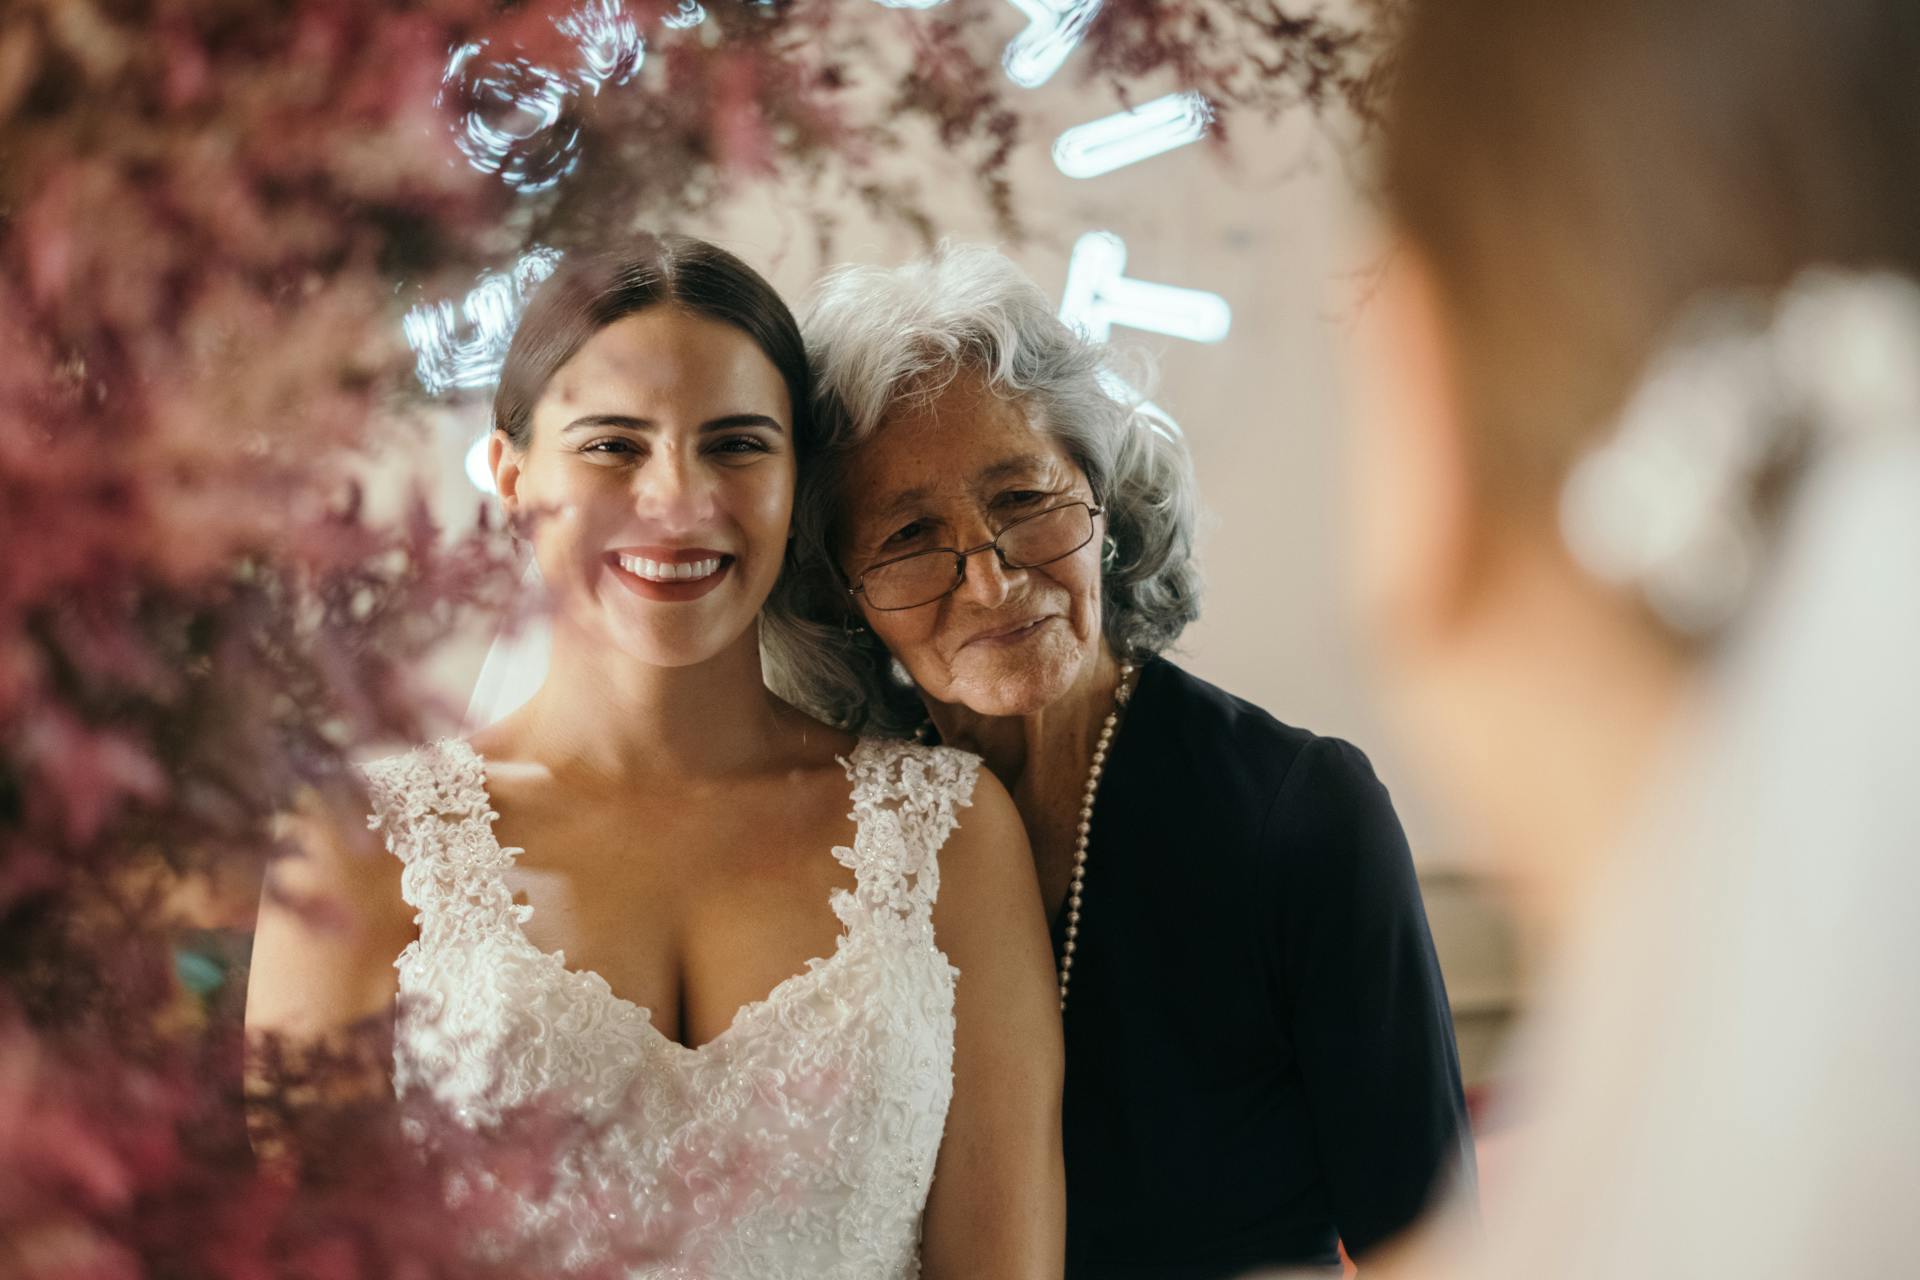 Una novia y su abuela mirándose en un espejo y sonriendo | Fuente: Pexels